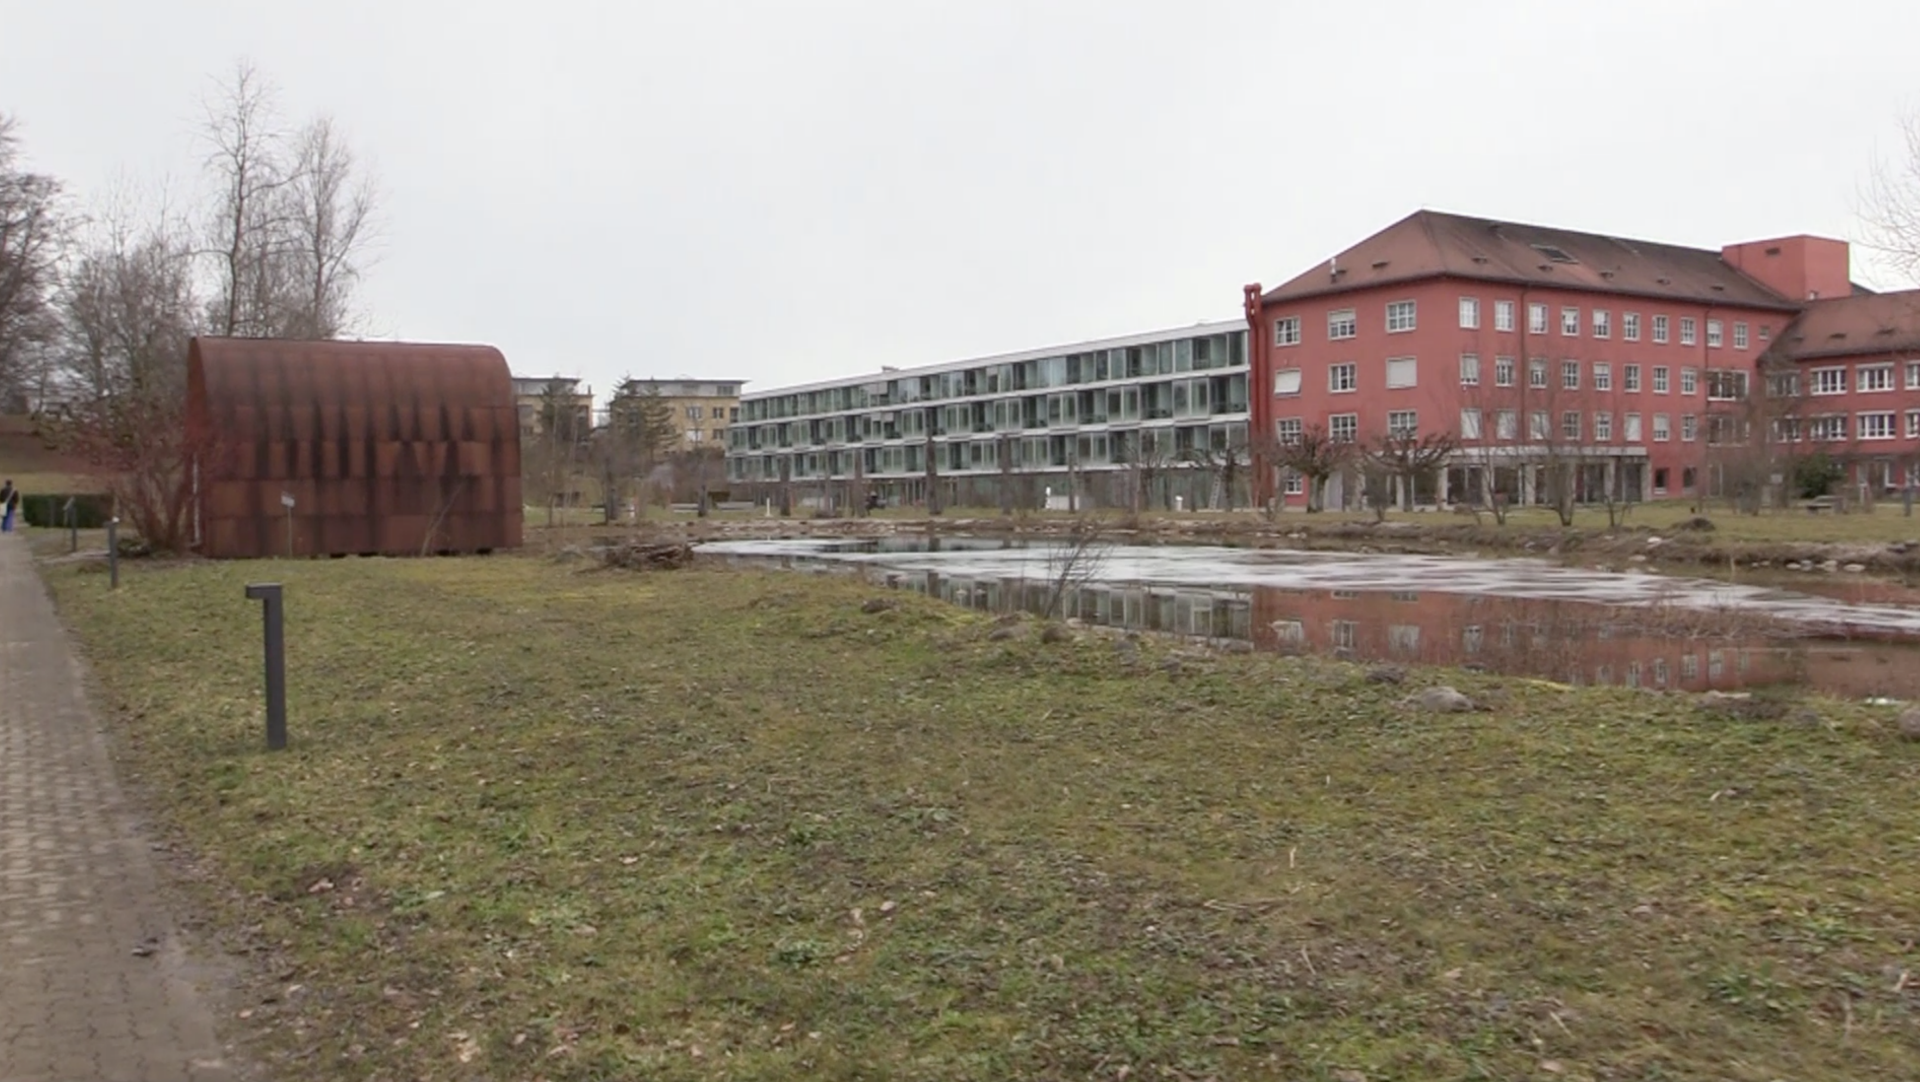 Campusähnlicher Park beim Spital Zollikerberg: Ort der Ruhe und Inspiration